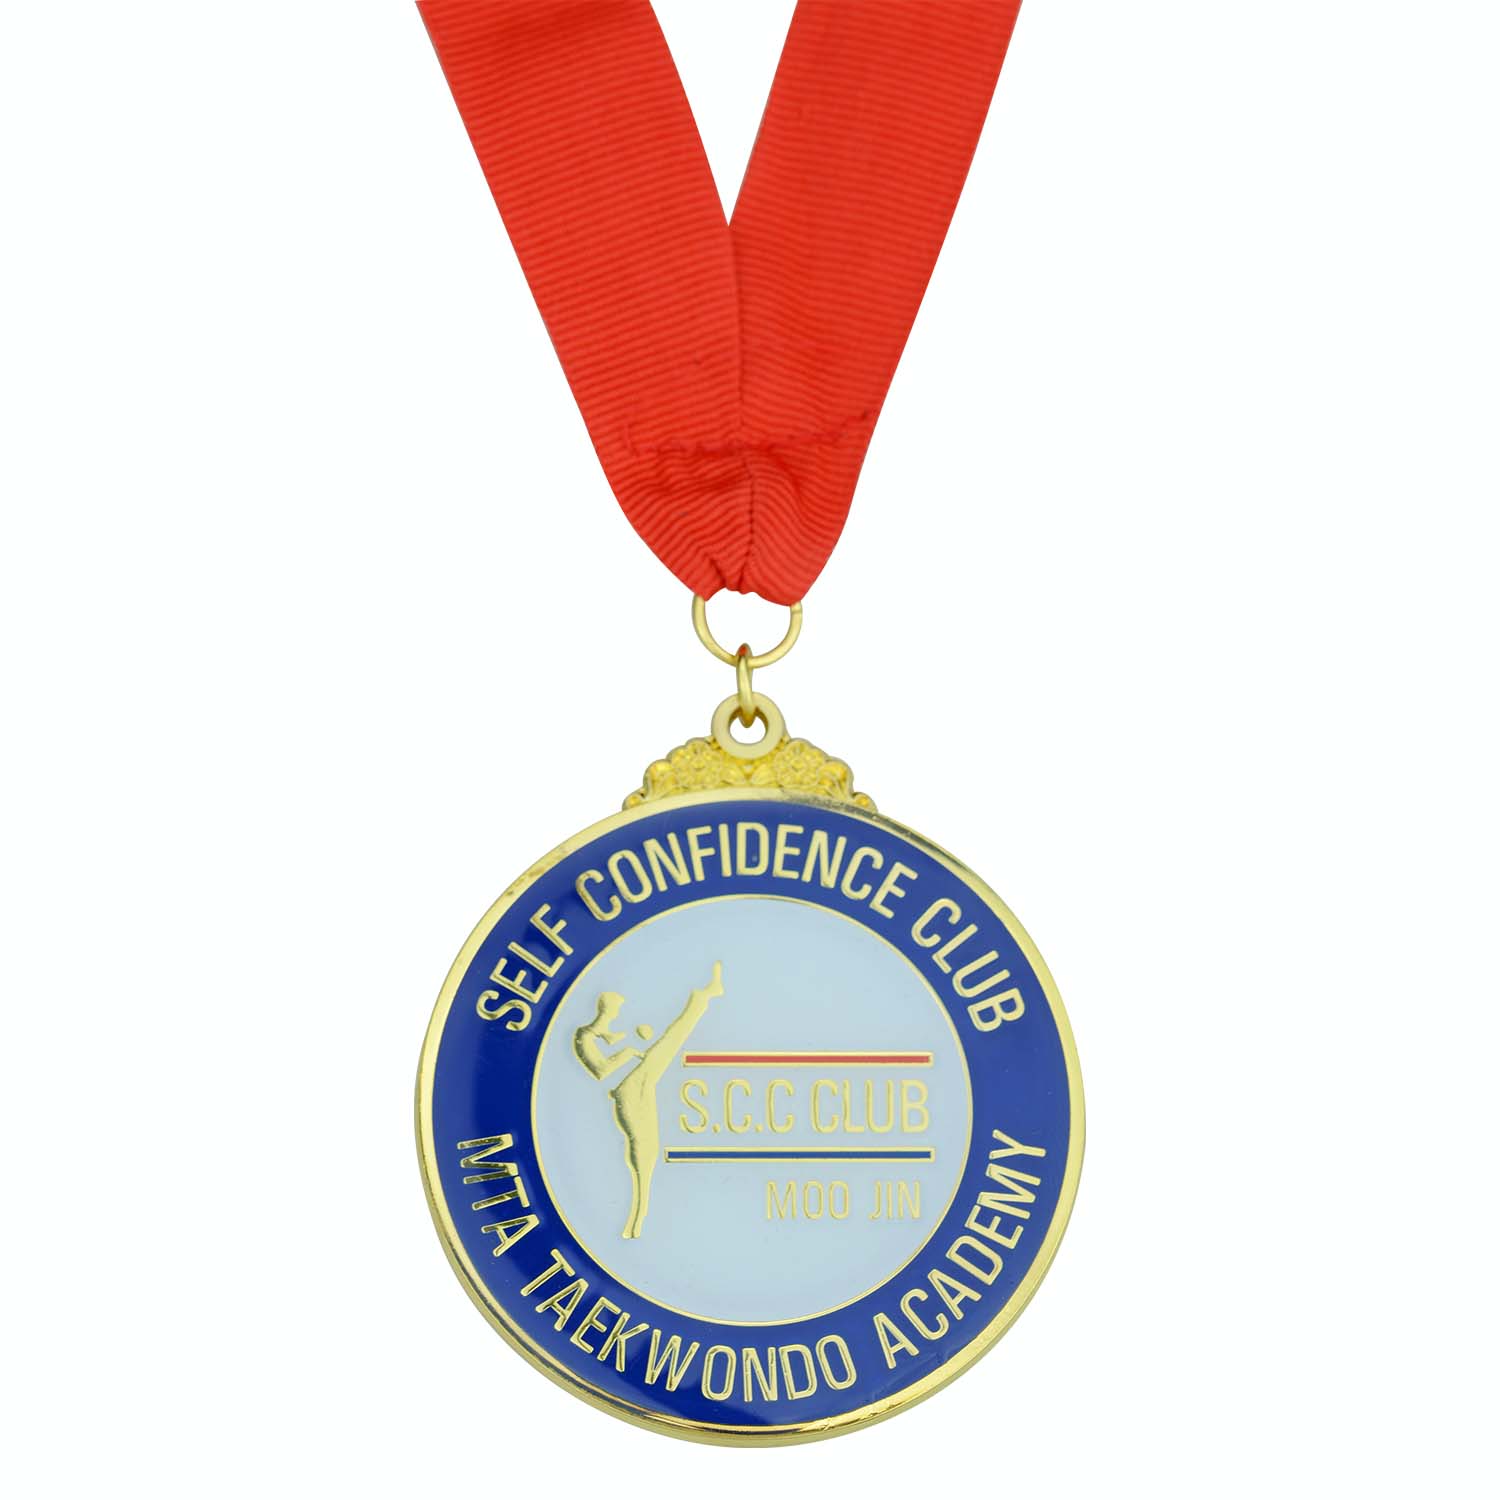 Hytaý medal öndüriji üpjün ediji örtükli glod adaty metal taekwondo medal eýesi (5)